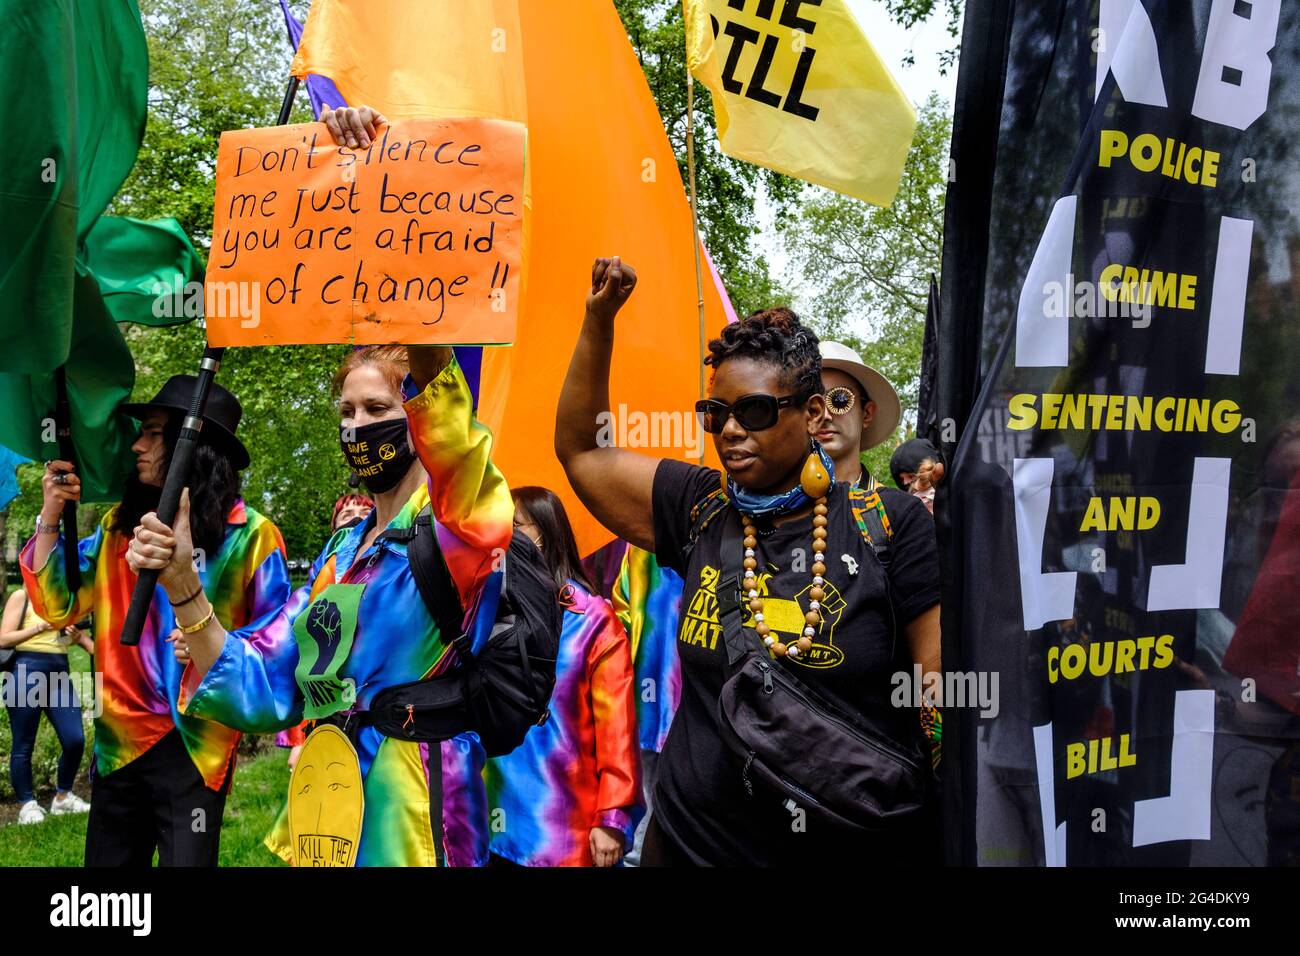 Las vidas negras son objeto de protestas a lo largo de la manifestación de Kill the Bill, dirigida por la rama británica de United for Black Lives, que lucha específicamente contra el uso del poder policial como medio de silenciar a las voces negras, en respuesta a los recientes asesinatos de personas negras por parte de la policía. Foto de stock